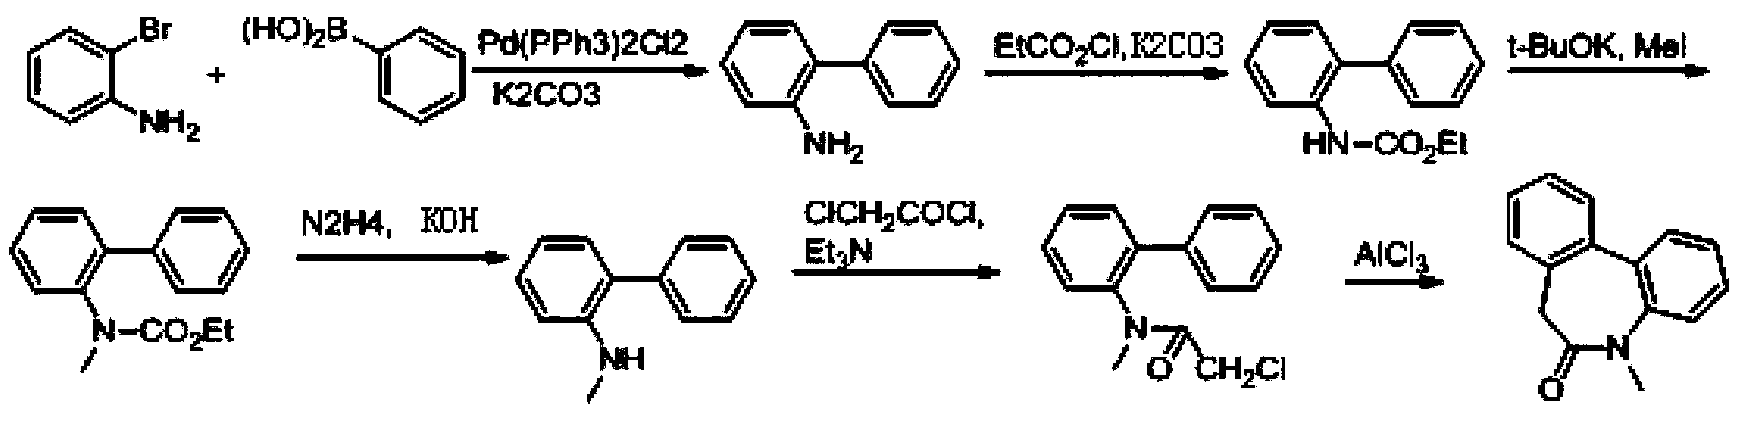 5-methyl-7-amino-5H,7H-dibenzo[b,d]azepin-6-ketone preparation method